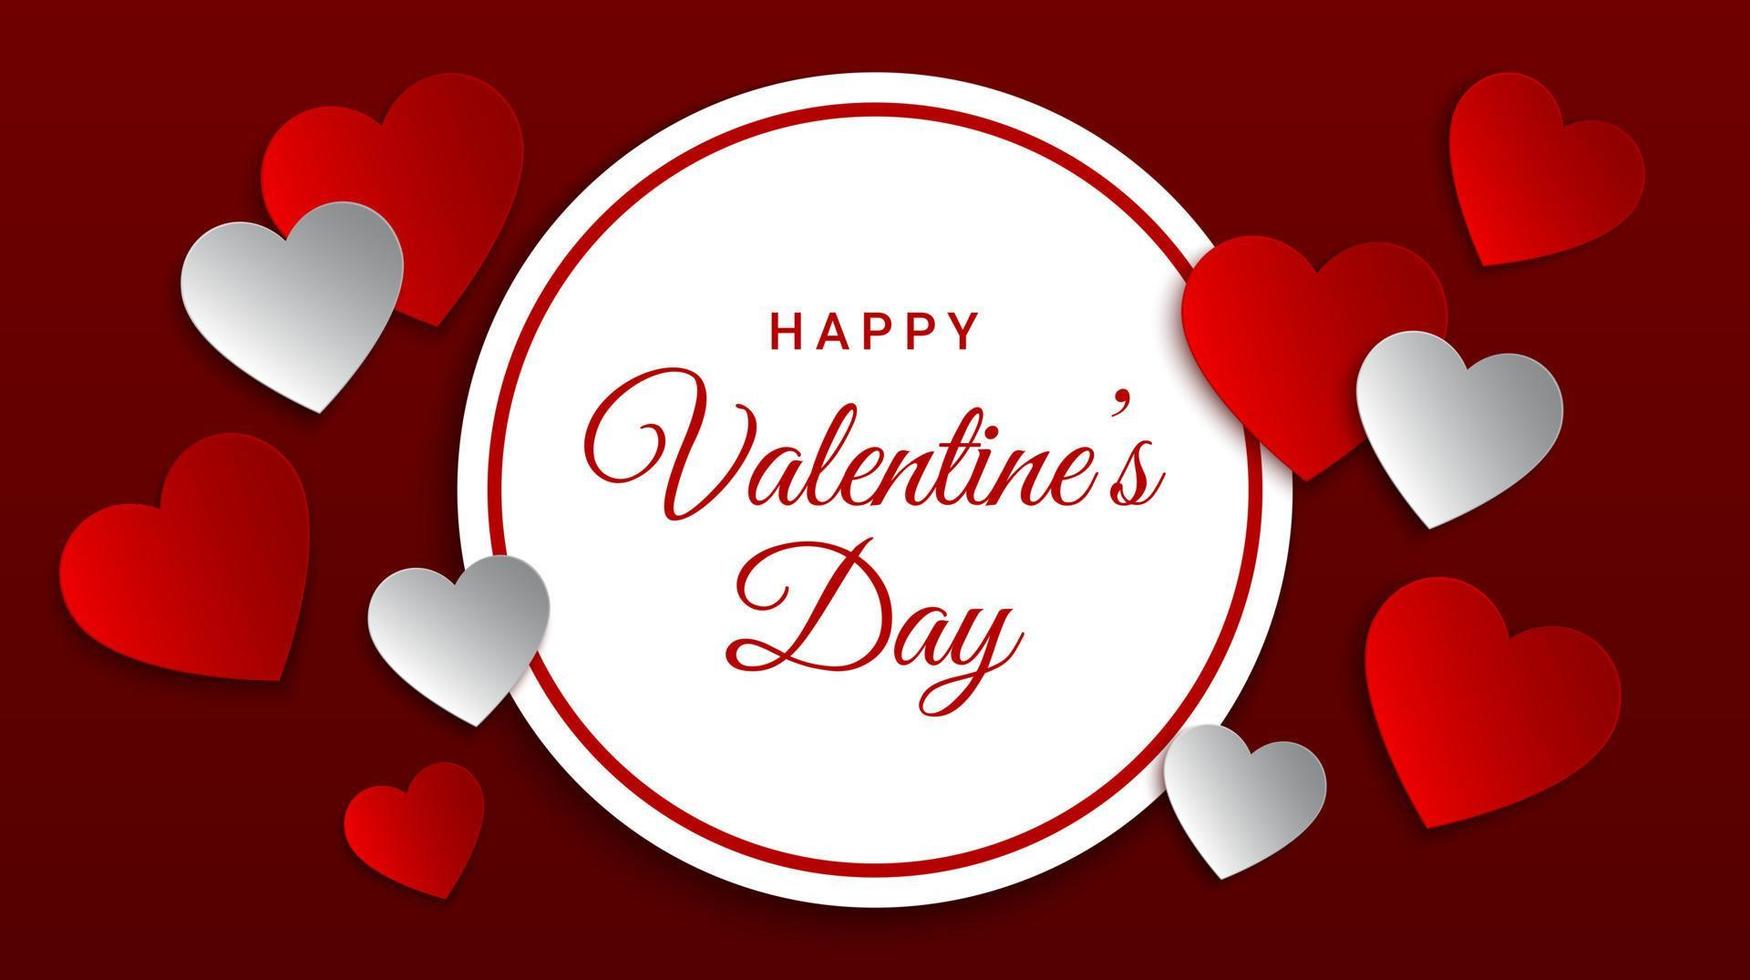 banner de concepto de día de san valentín con corazones de papel rojo y blanco. plantilla de diseño de fondo de San Valentín rojo. ilustración vectorial vector